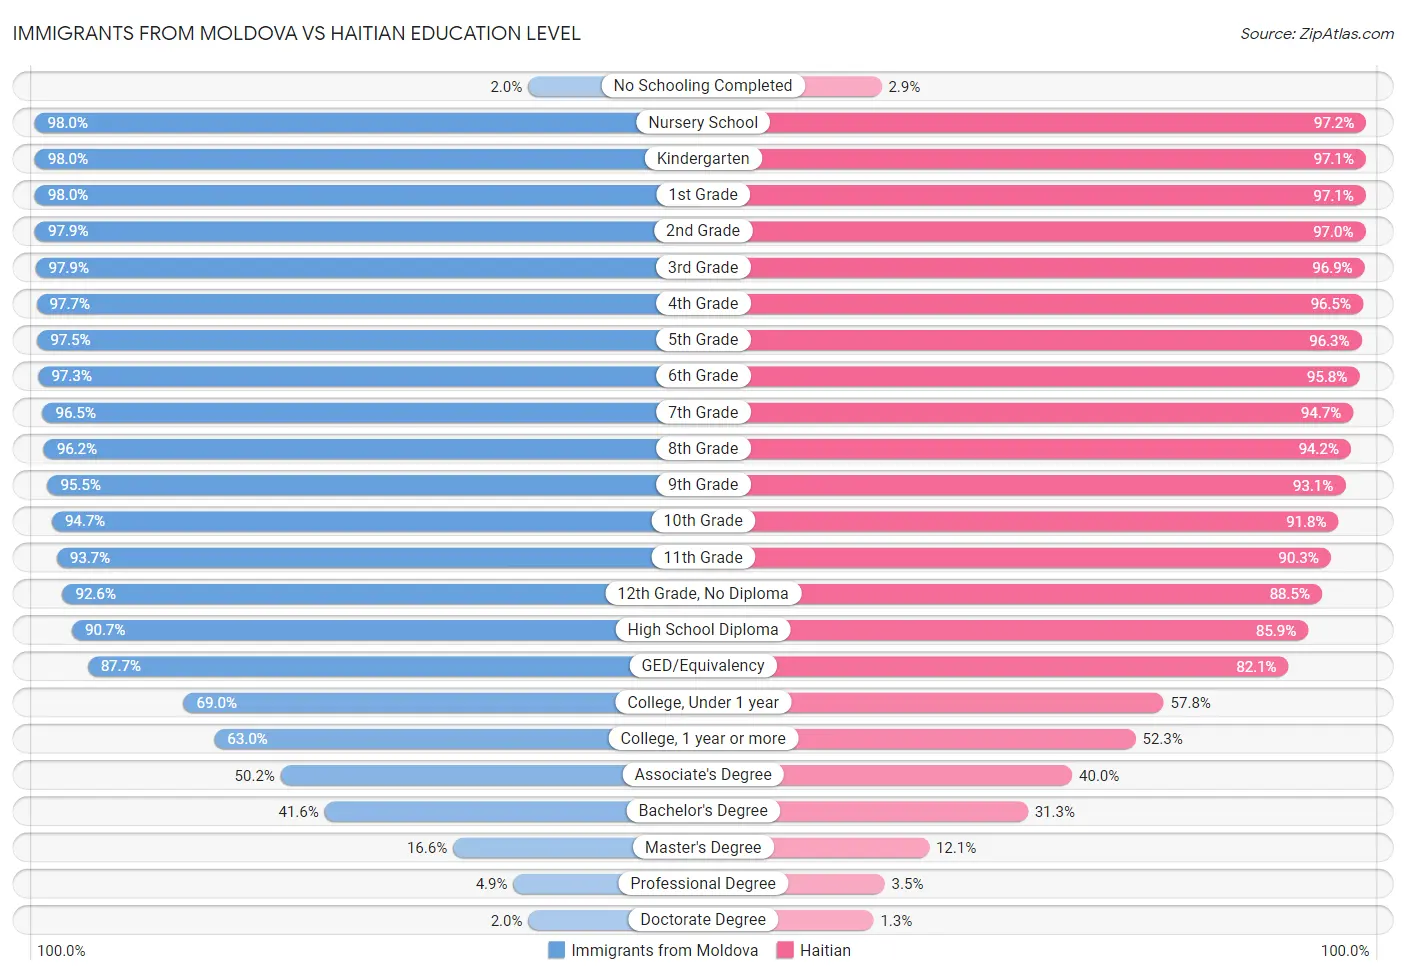 Immigrants from Moldova vs Haitian Education Level